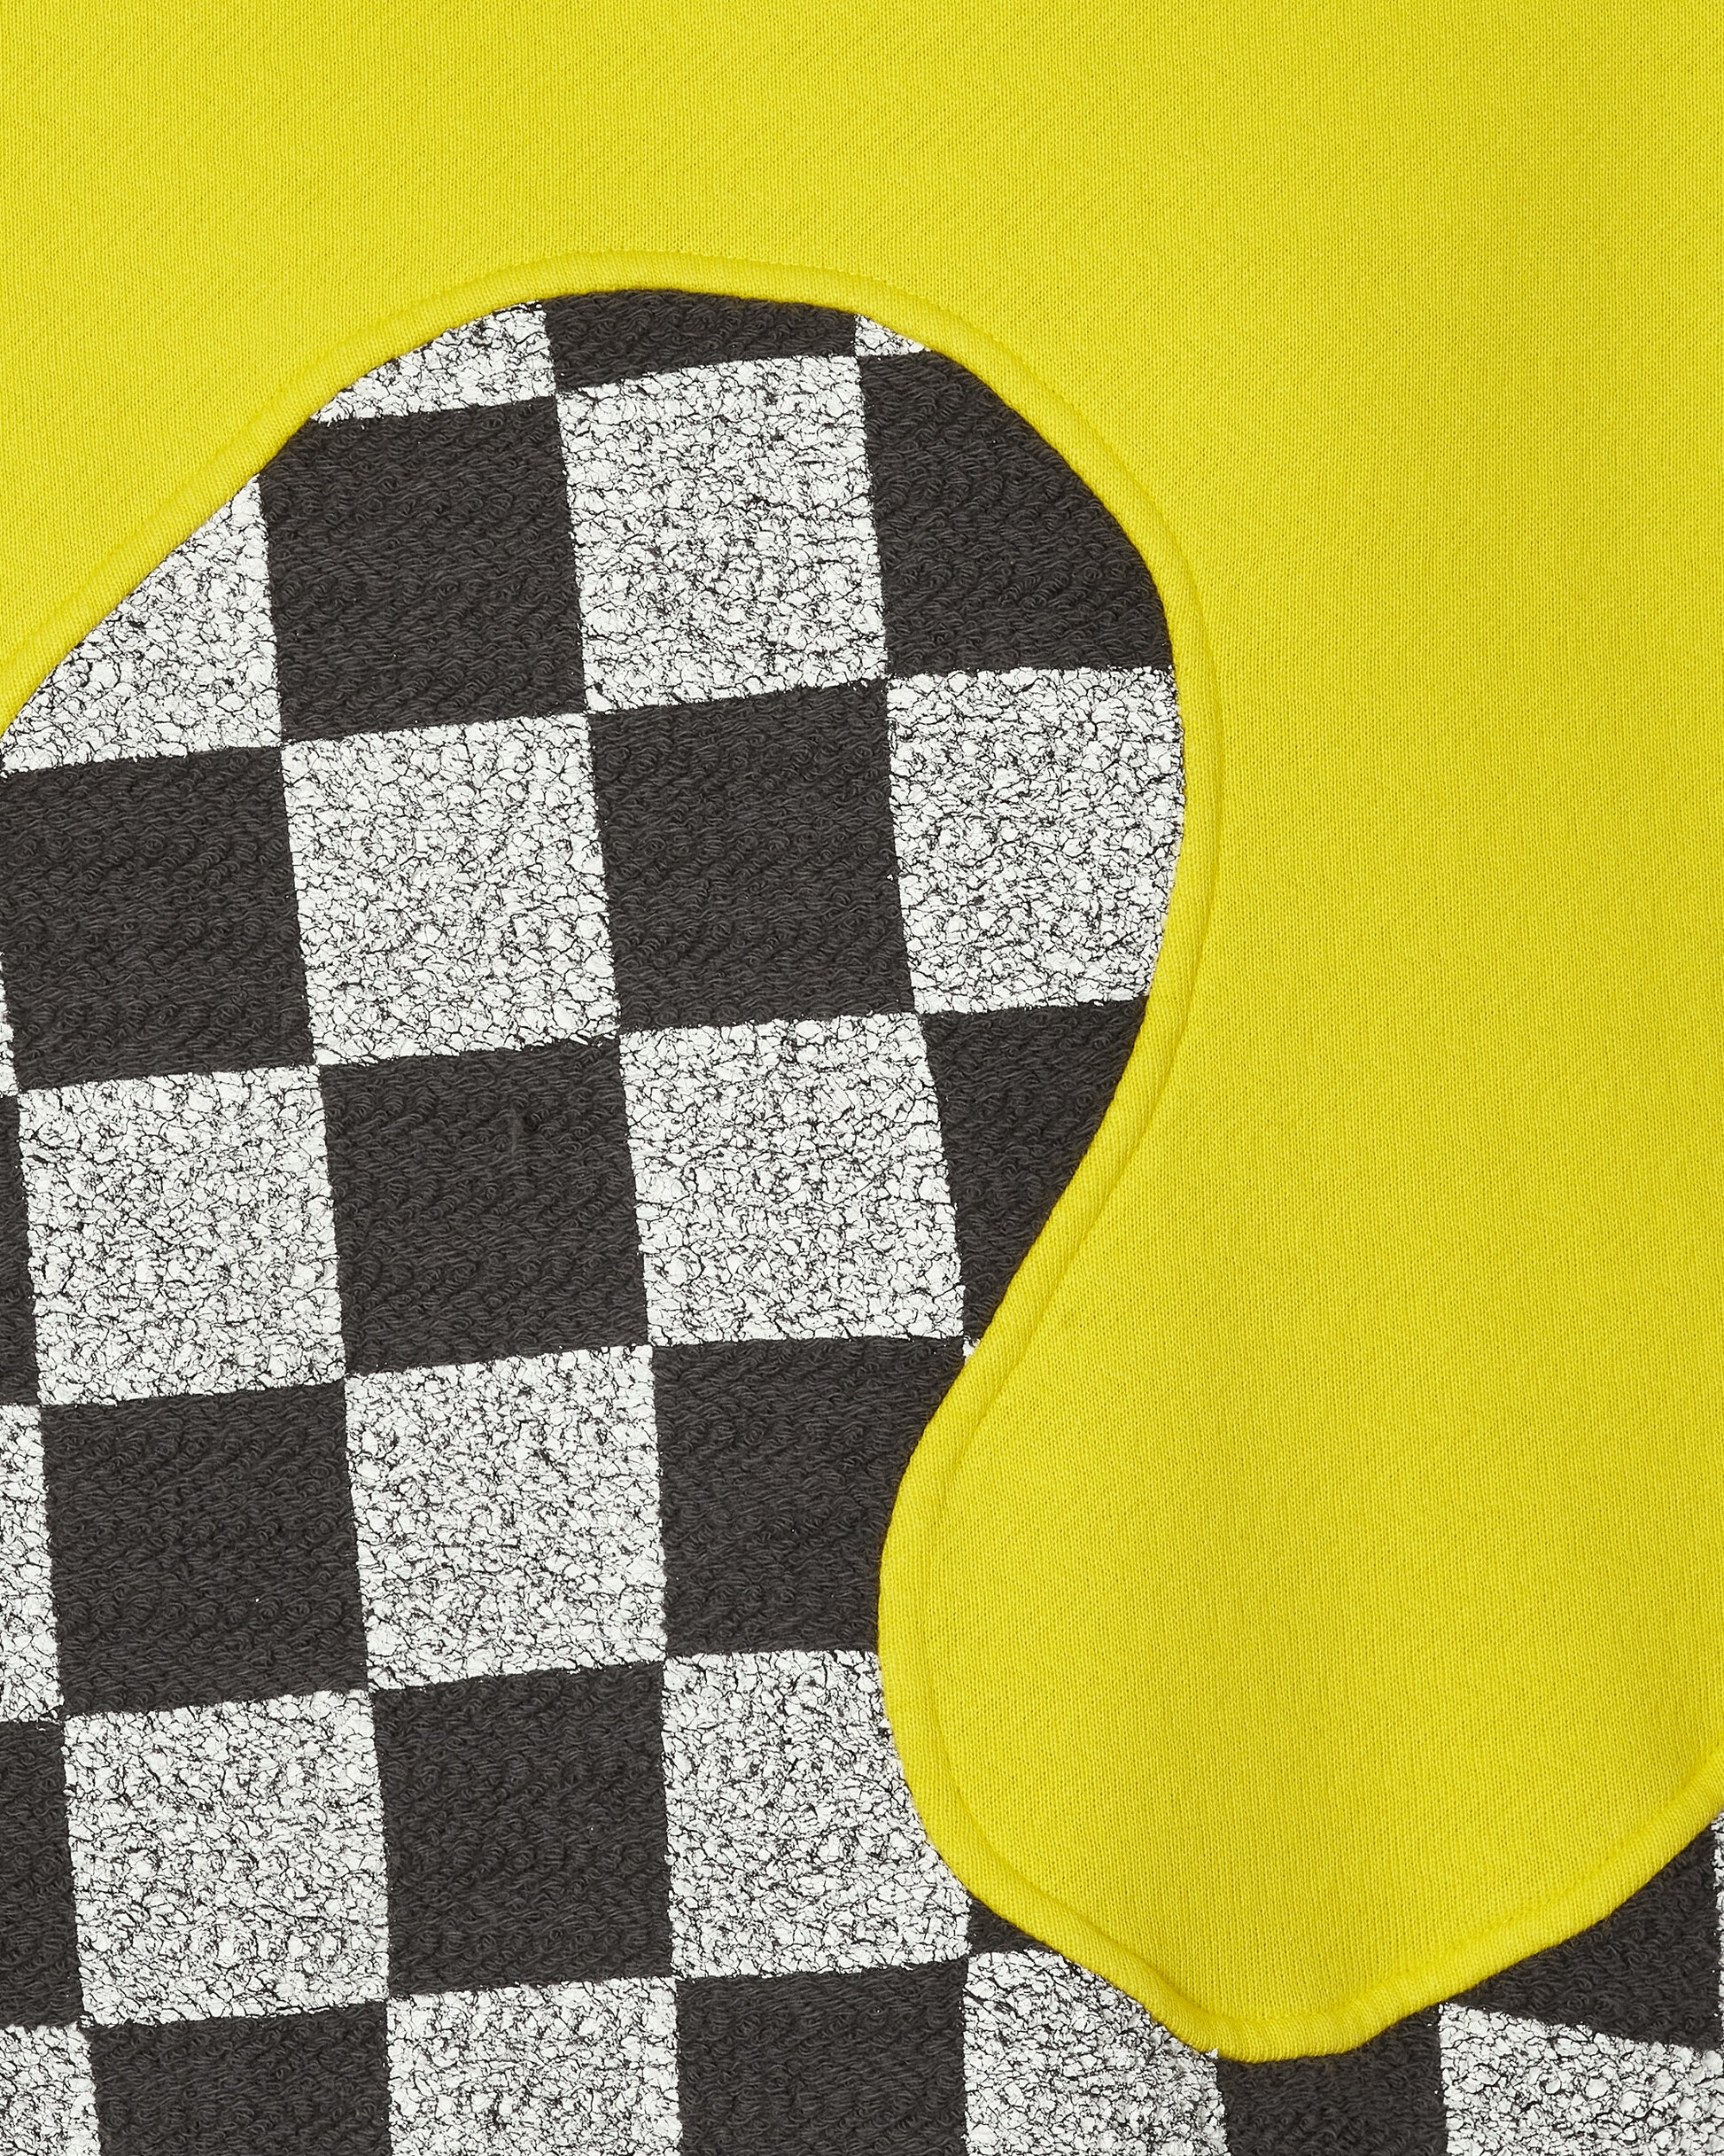 ERL Yellow Checker Swirl Hoodie Knit Yellow Checker Sweatshirts Hoodies ERL08T022 1